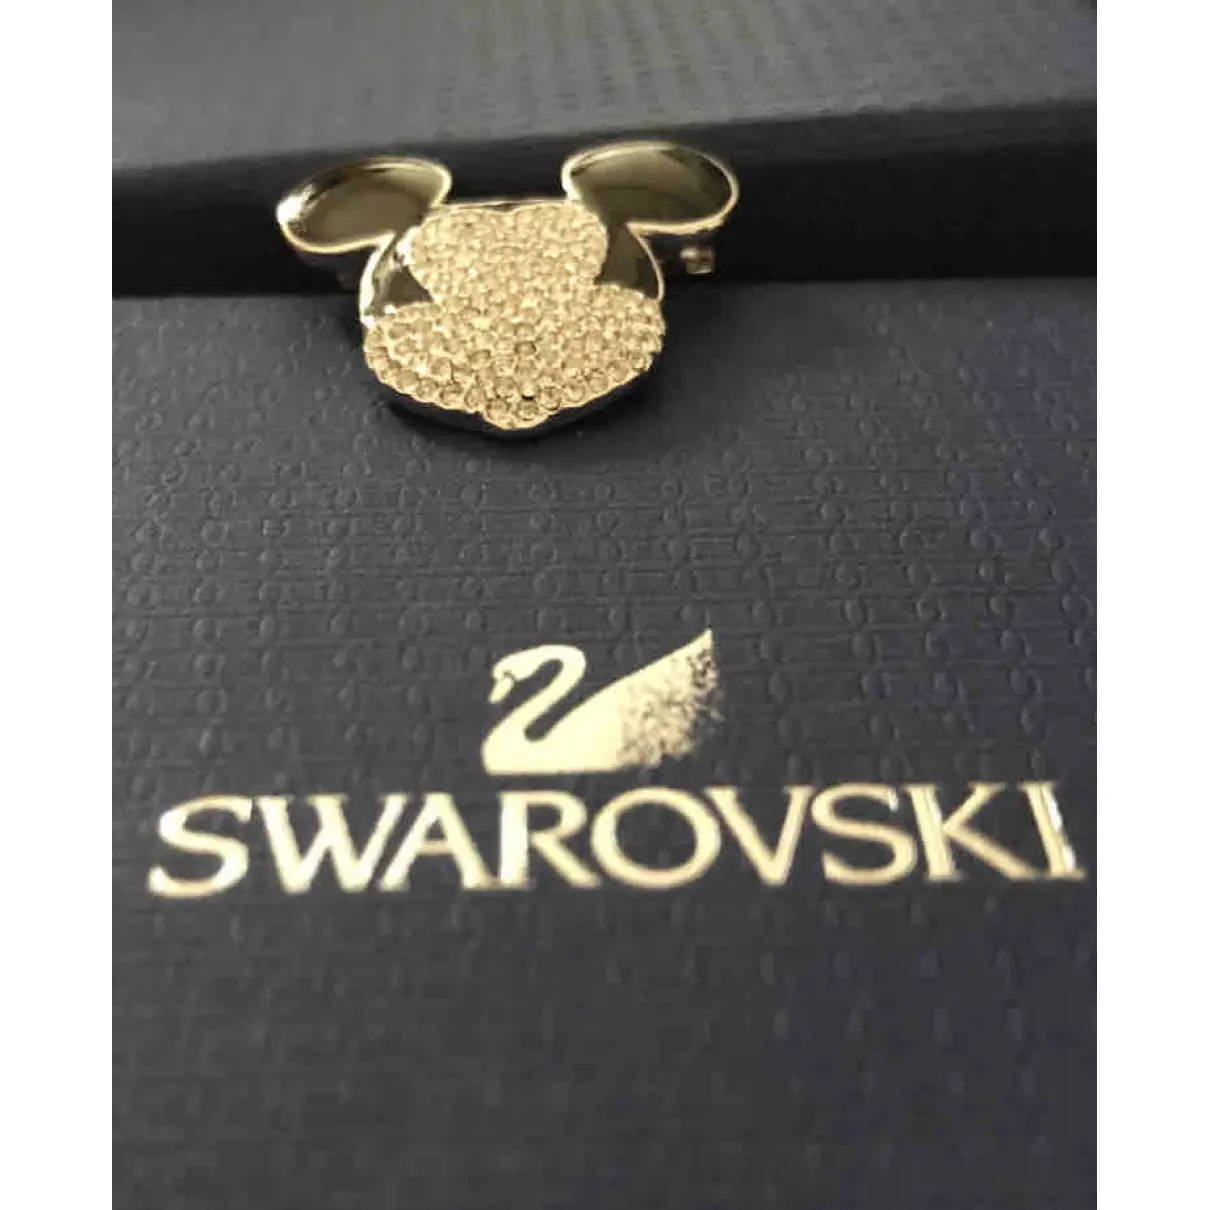 Swarovski Pin & brooche for sale